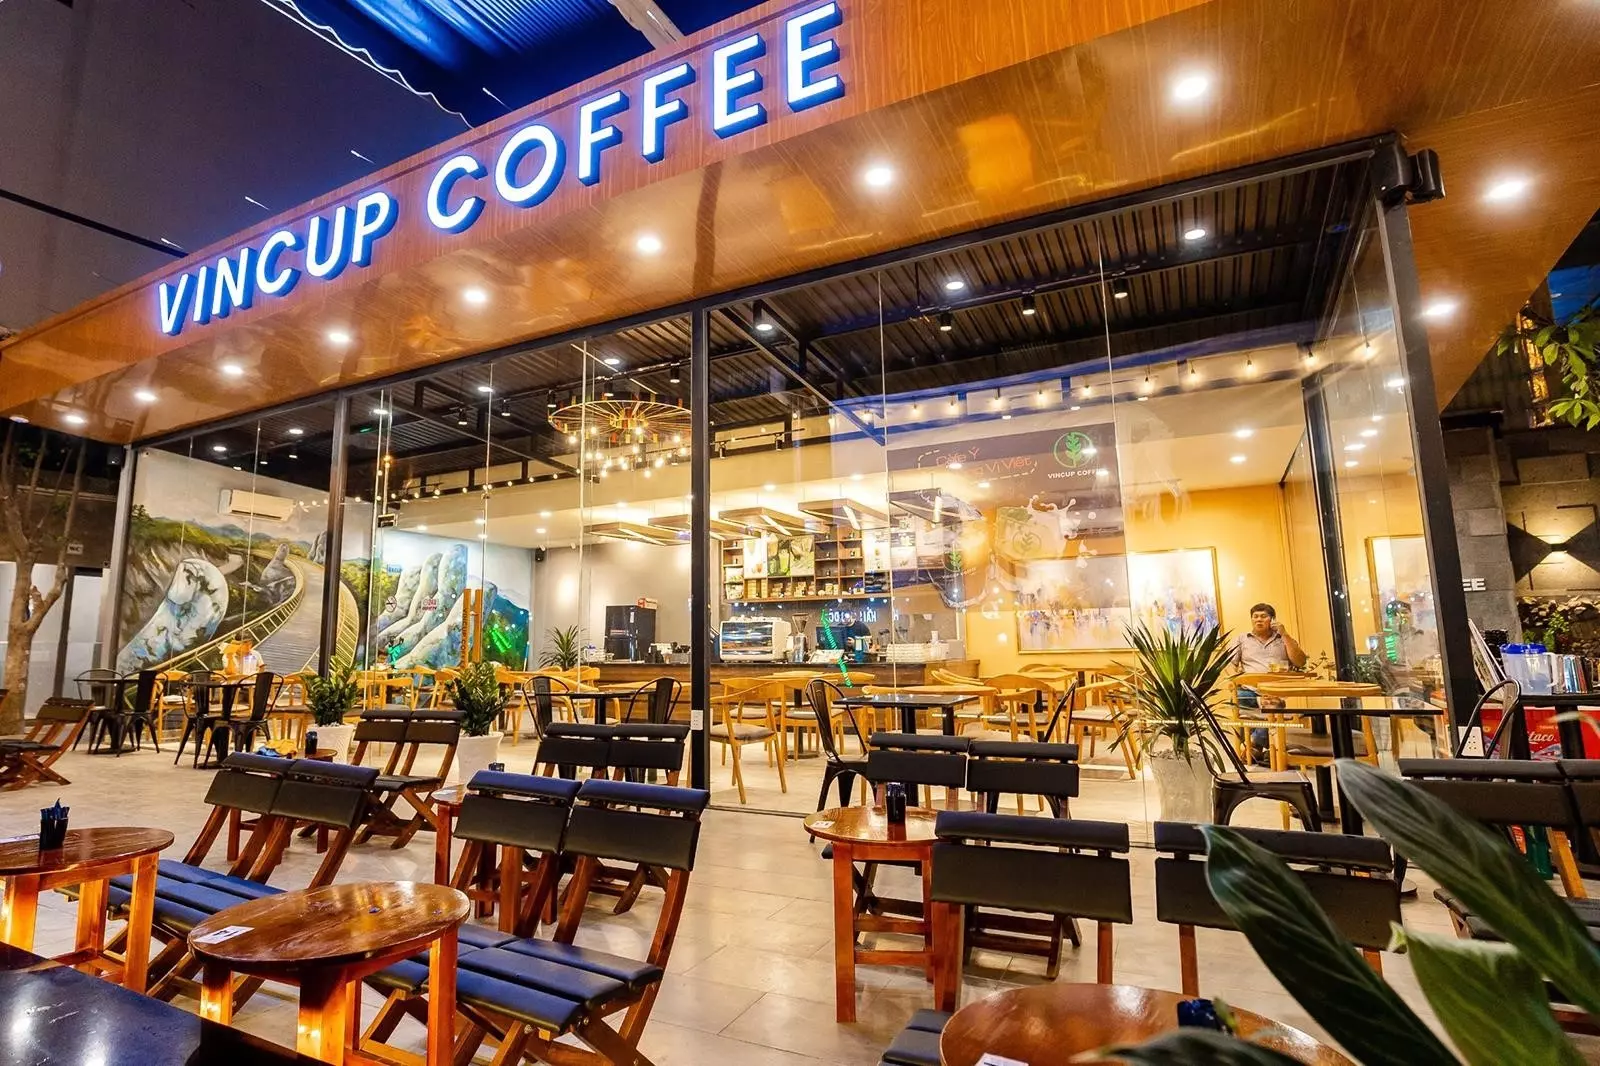 Vincup Coffee là một quán cà phê nổi tiếng với không gian sang trọng và phục vụ đa dạng các món đồ uống ngon và độc đáo. Quán là điểm đến lý tưởng để thưởng thức cà phê chất lượng và tận hưởng không khí thoải mái và ấm cúng.